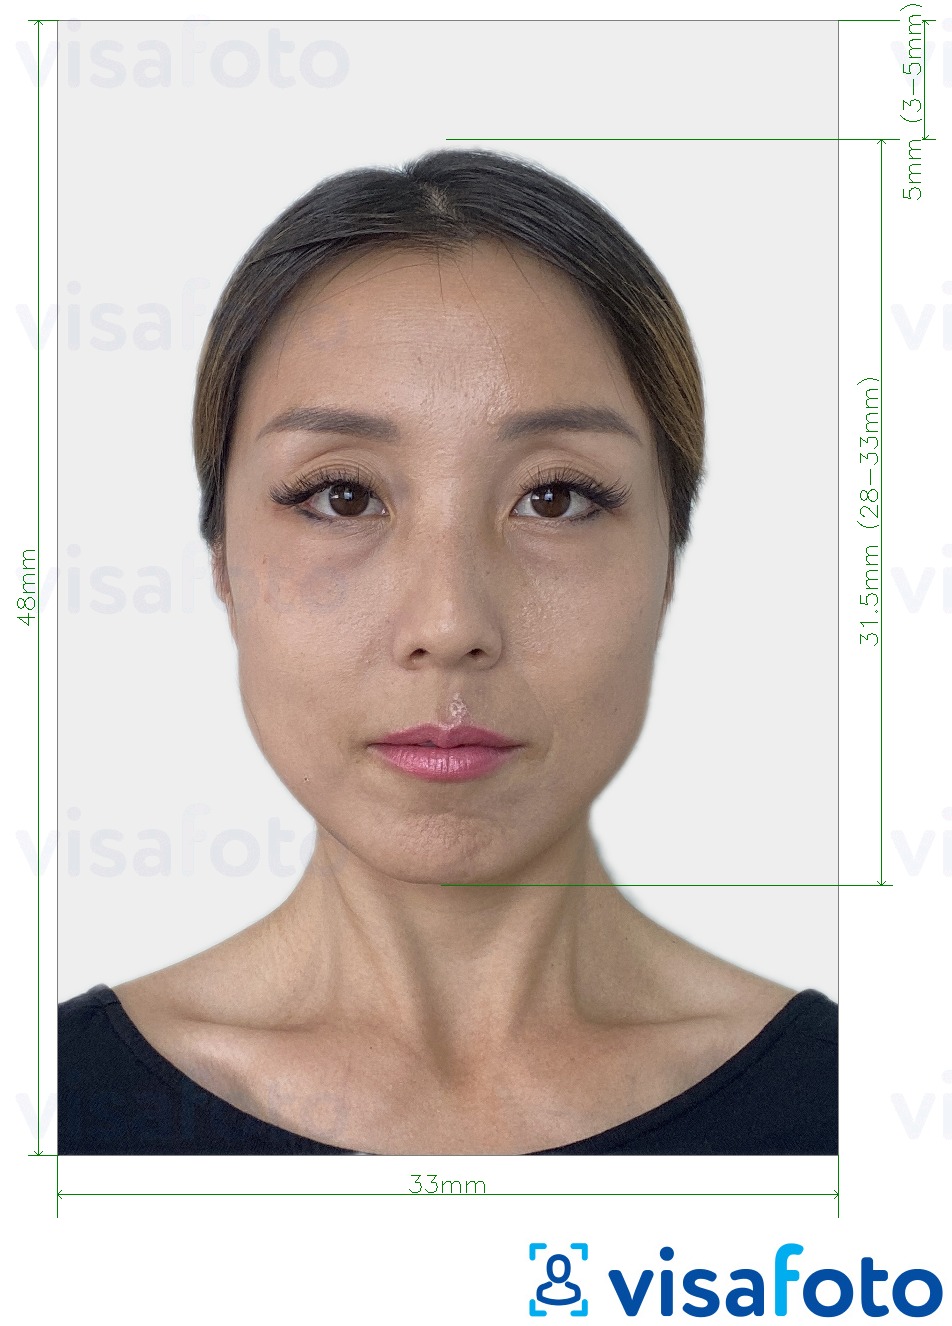 Voorbeeld van foto voor China Paspoort 33x48 mm lichtgrijze achtergrond met exacte maatspecificatie